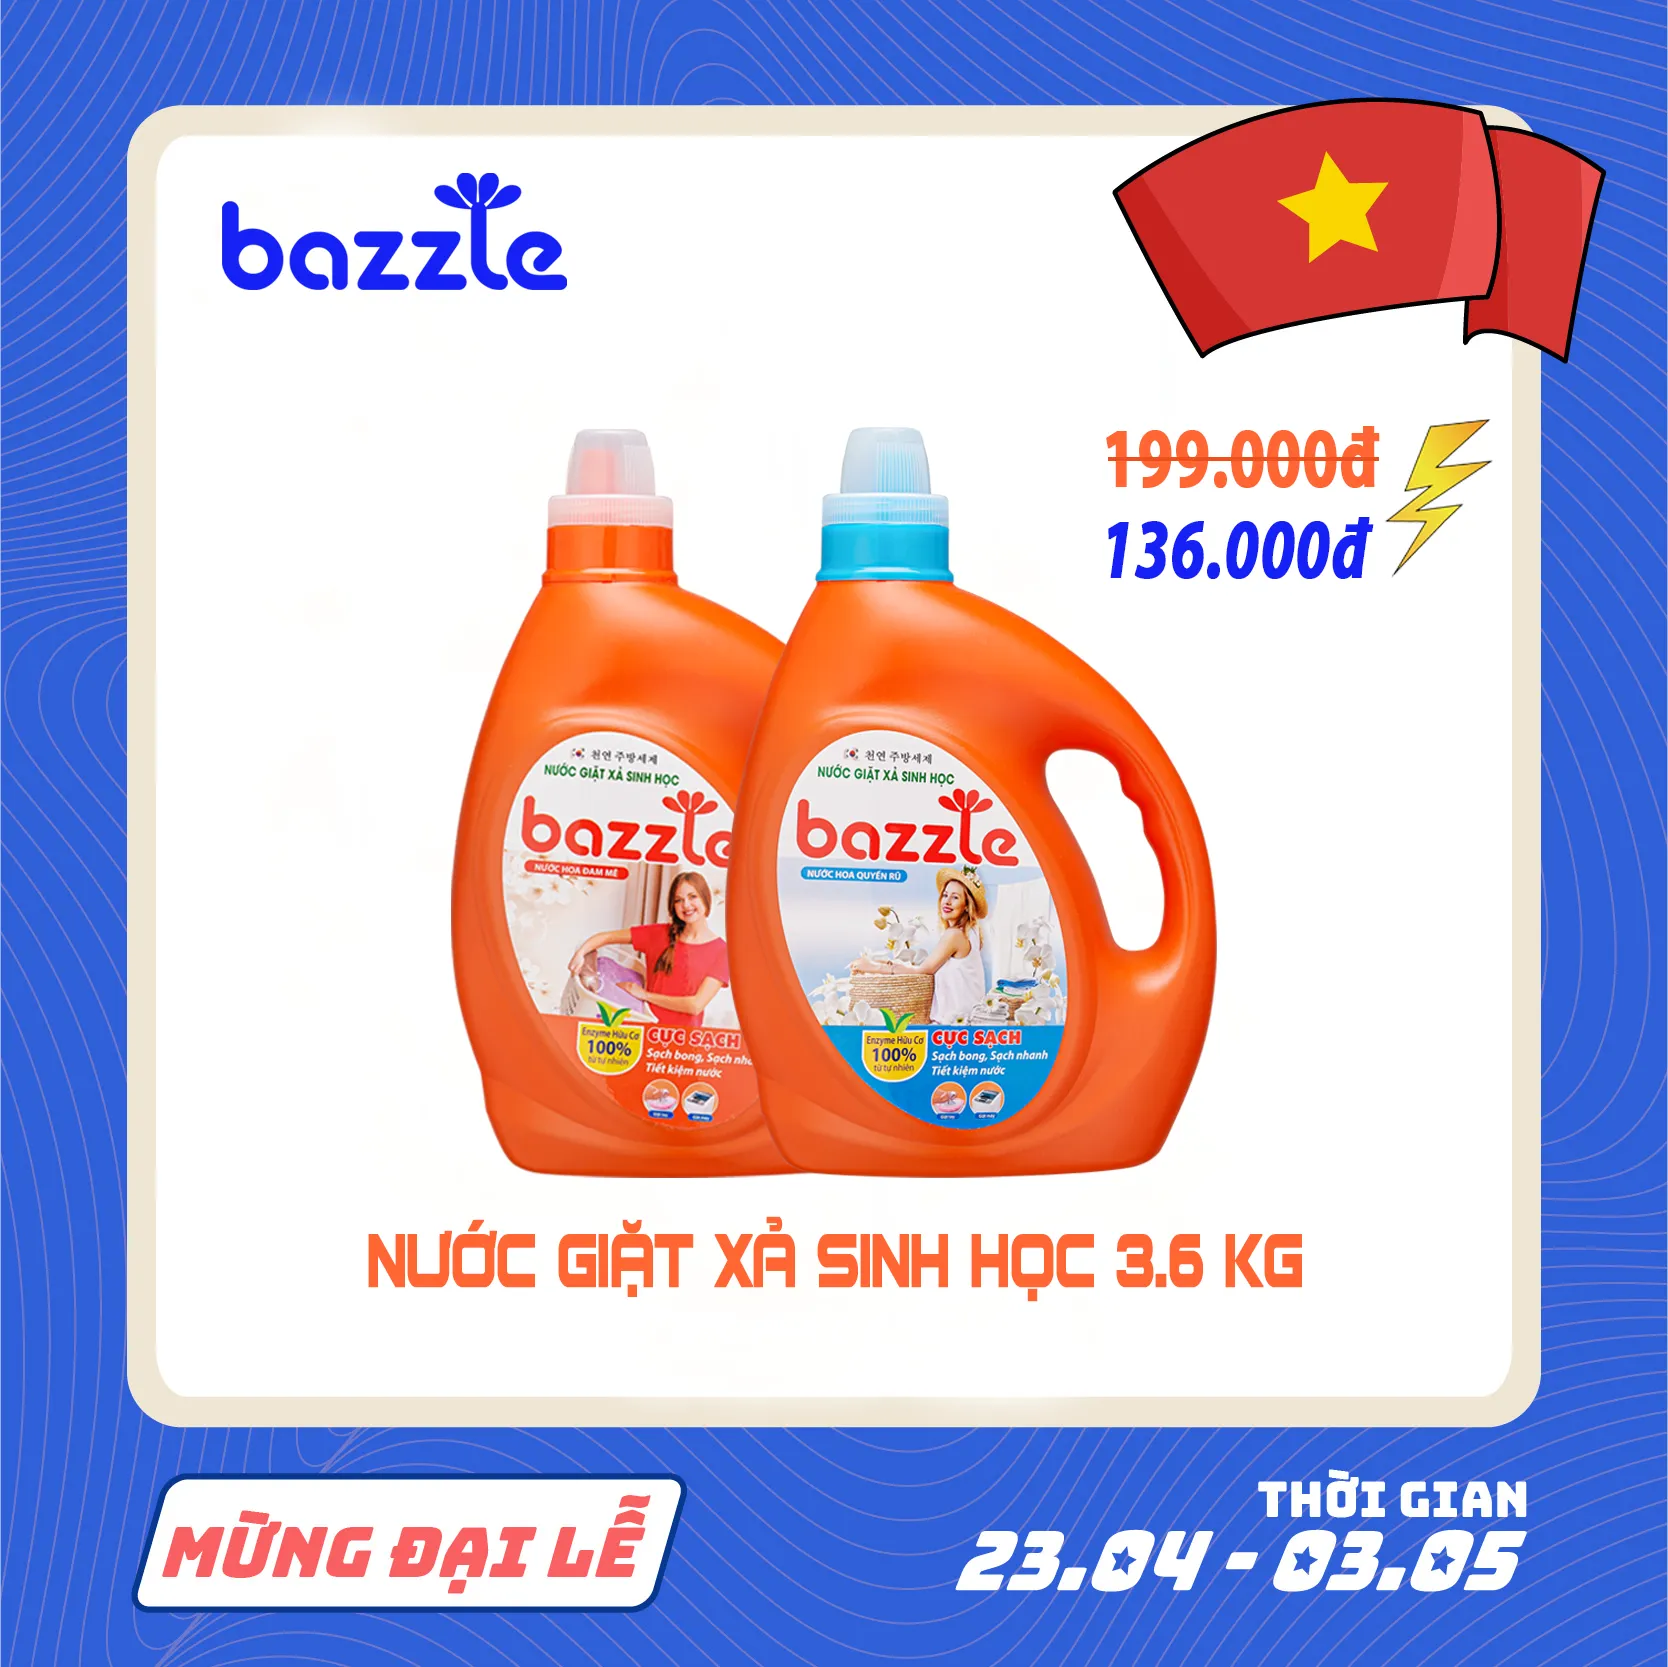 Nước giặt xả sinh học Bazzle Hàn Quốc hương nước hoa Đam Mê sạch hơn sạch nhanh hơn dịu nhẹ với cả bé yêu can to 3.6 kg